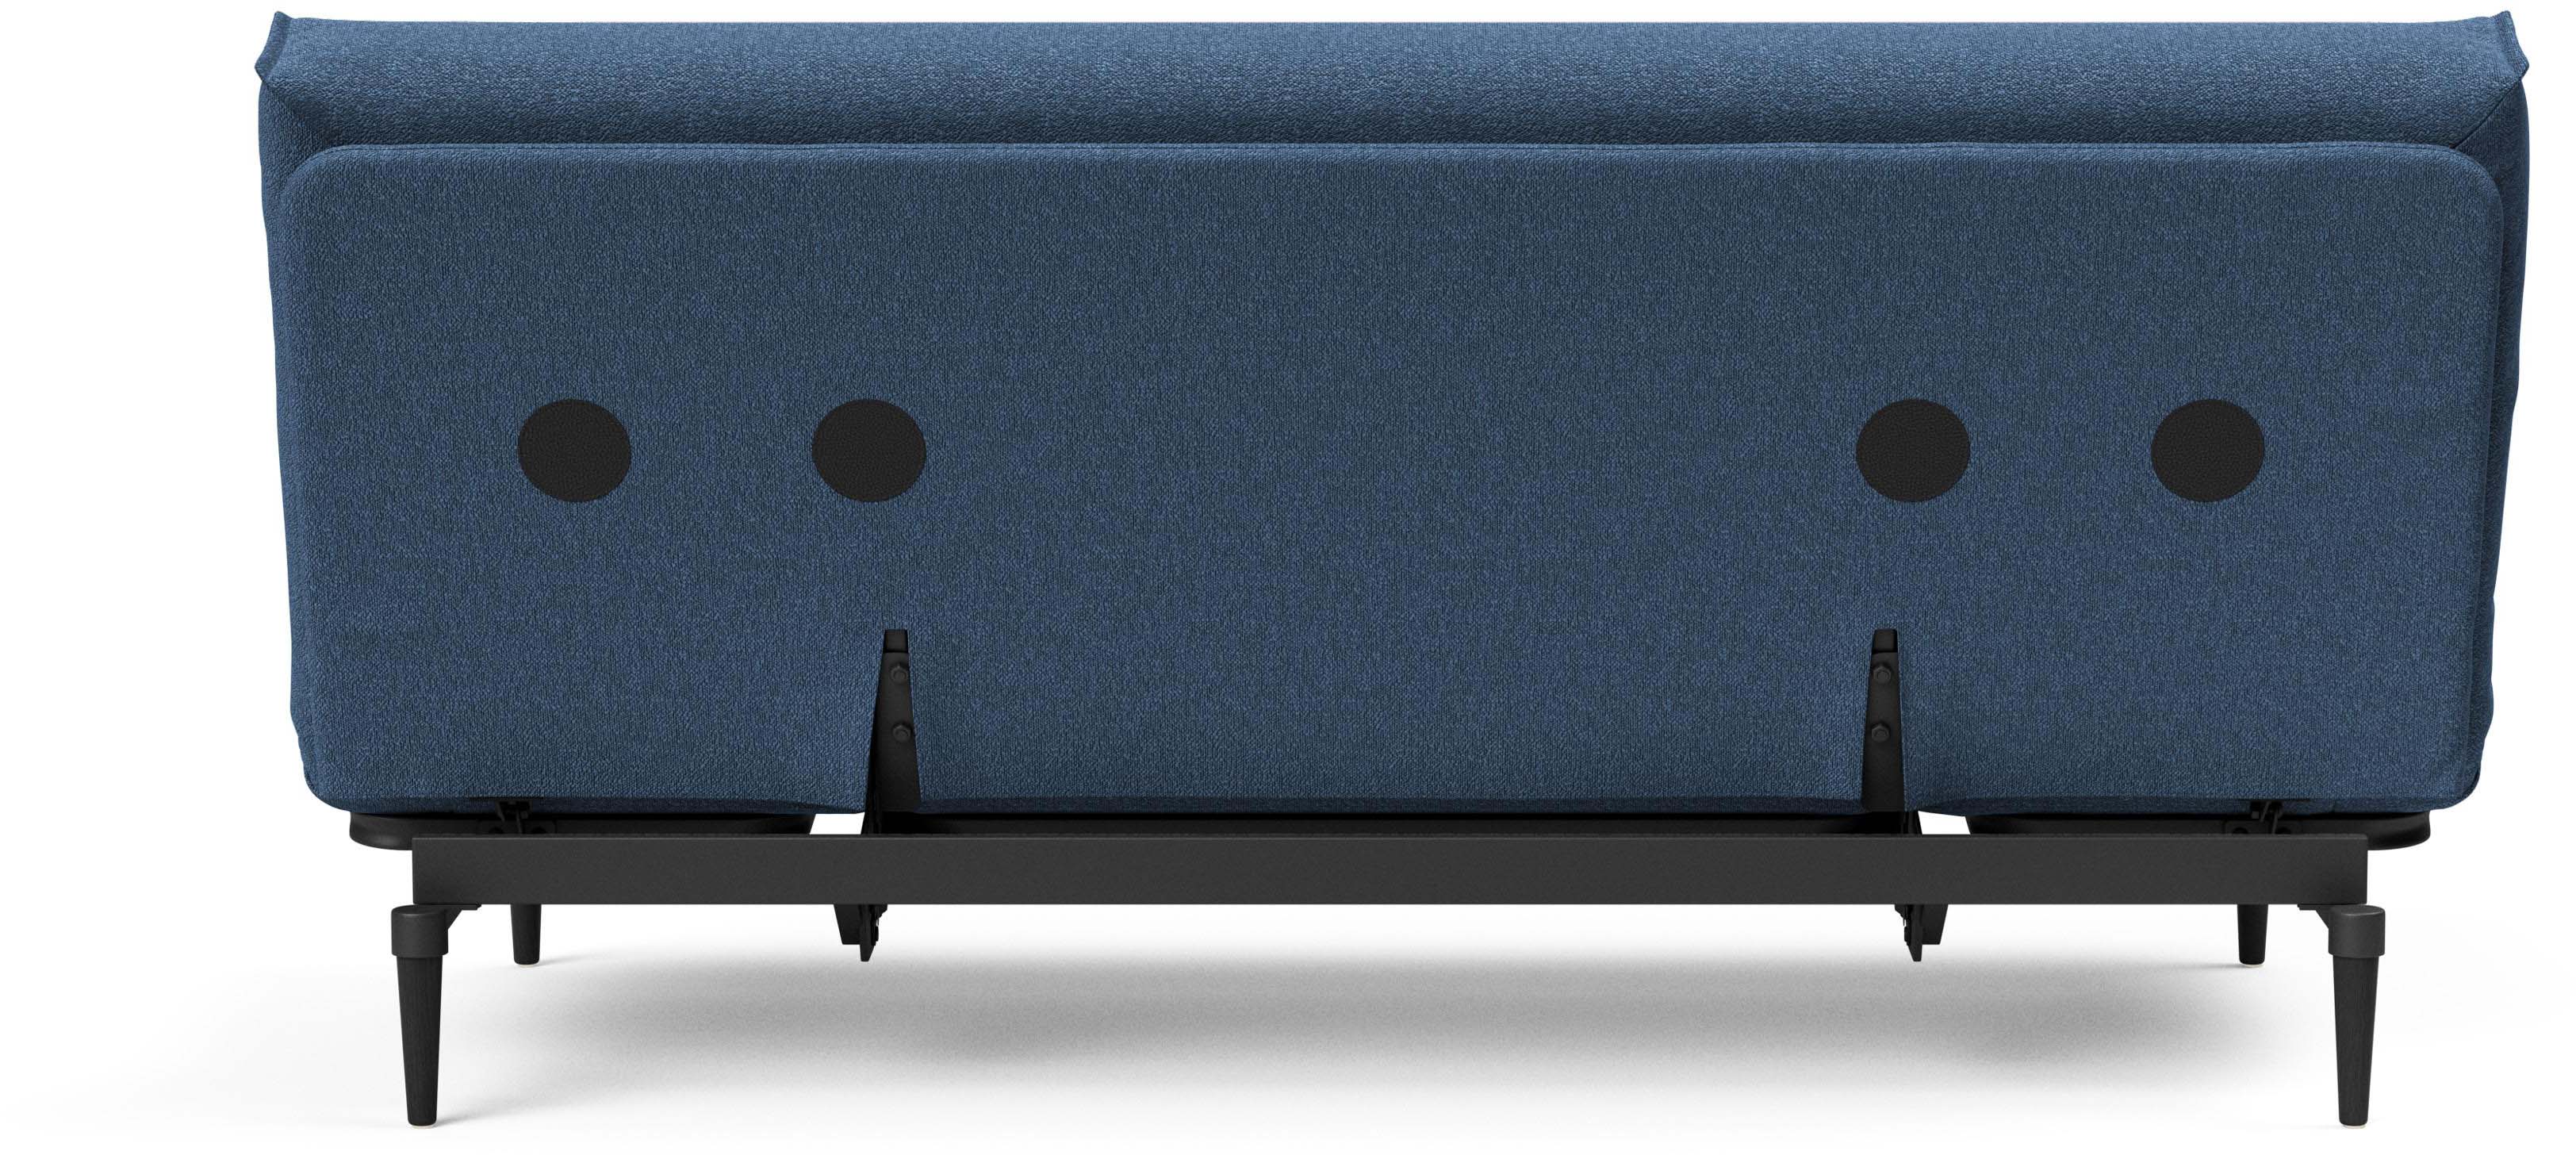 Colpus Black Bettsofa Nordic Cover in Blau 537 präsentiert im Onlineshop von KAQTU Design AG. Bettsofa ist von Innovation Living